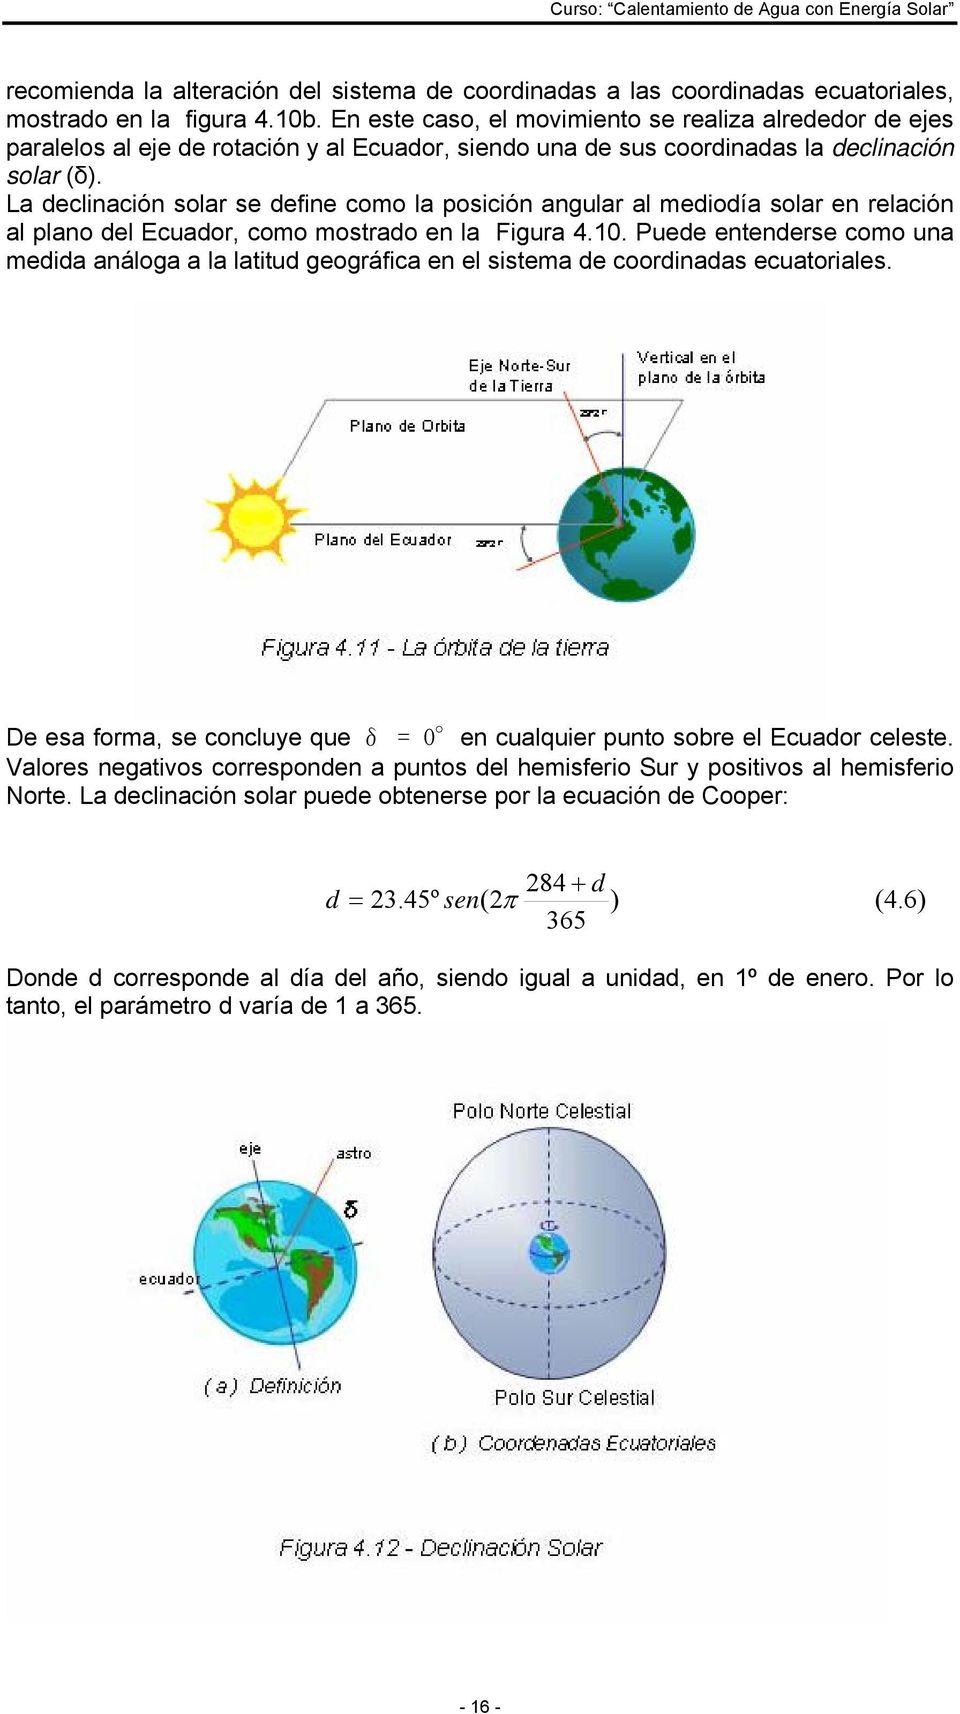 La declinación solar se define como la posición angular al mediodía solar en relación al plano del Ecuador, como mostrado en la Figura 4.10.